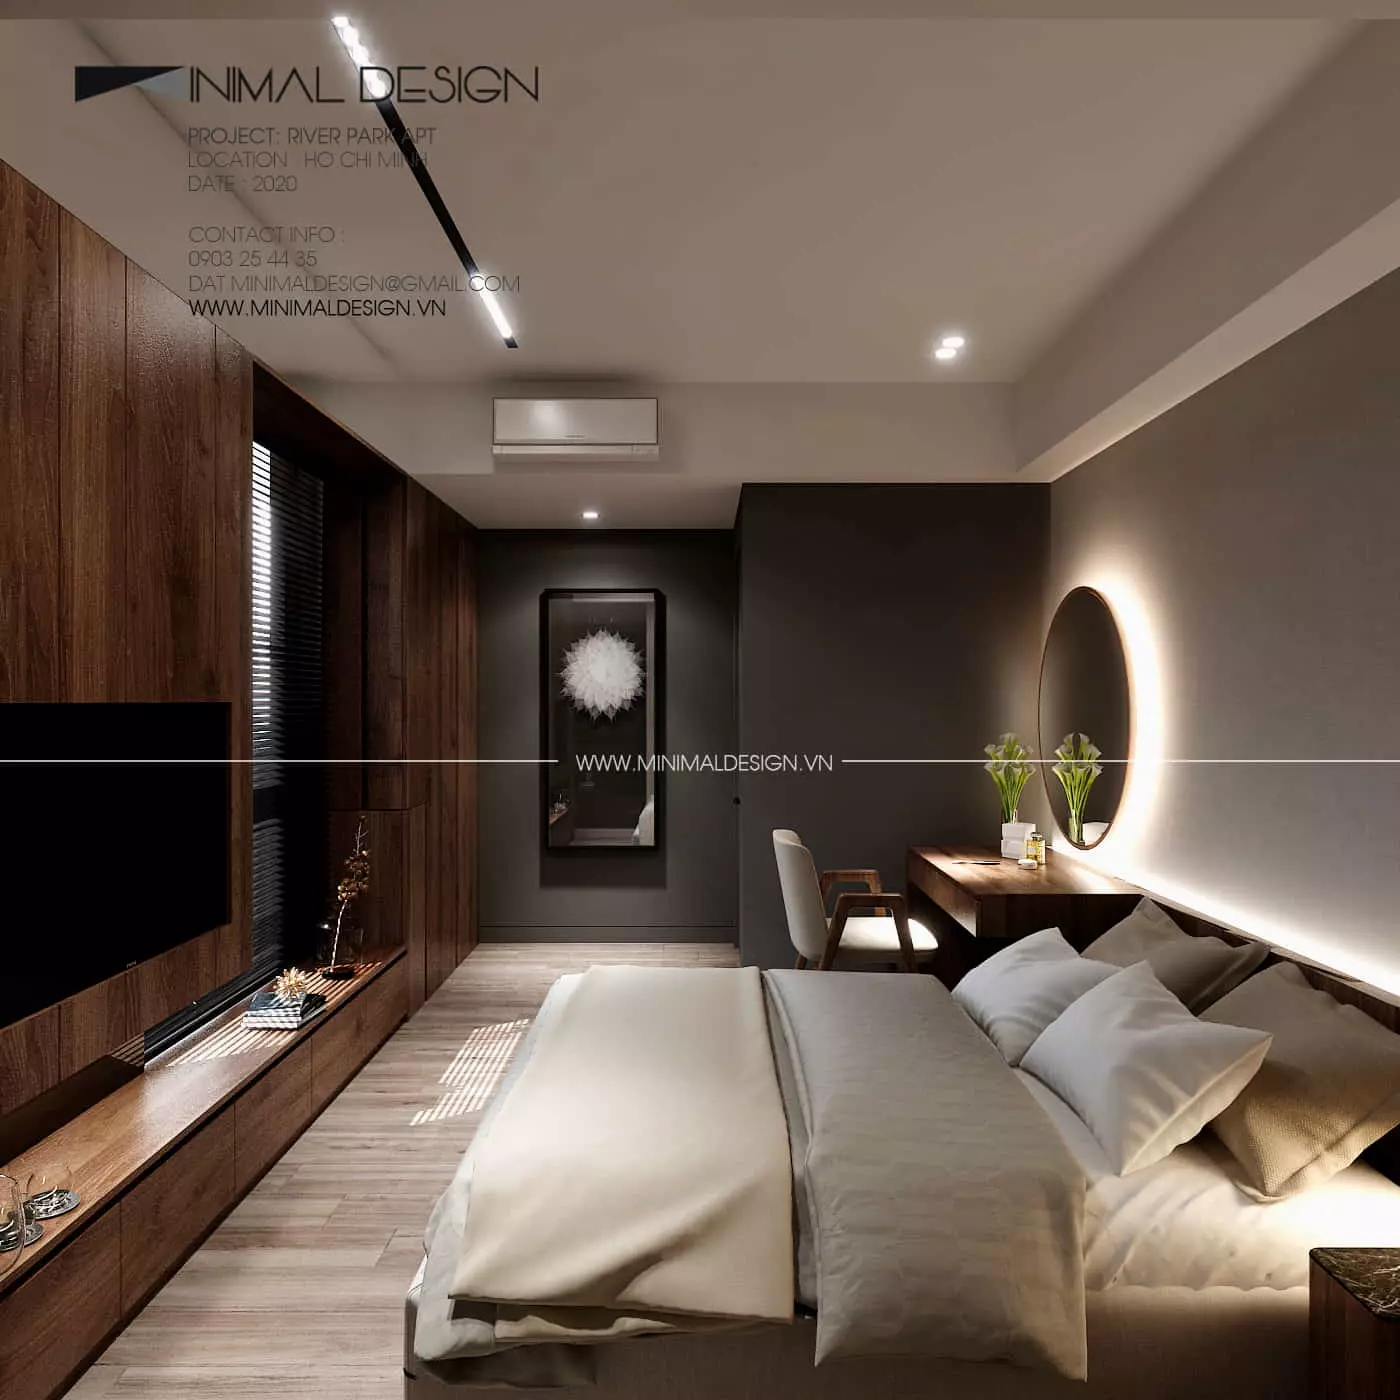 Phòng ngủ phong cách tối giản giúp tôn lên vẻ đẹp mộc mạc, chú trọng vào không gian tổng thể thay vì các chi tiết rườm rà.